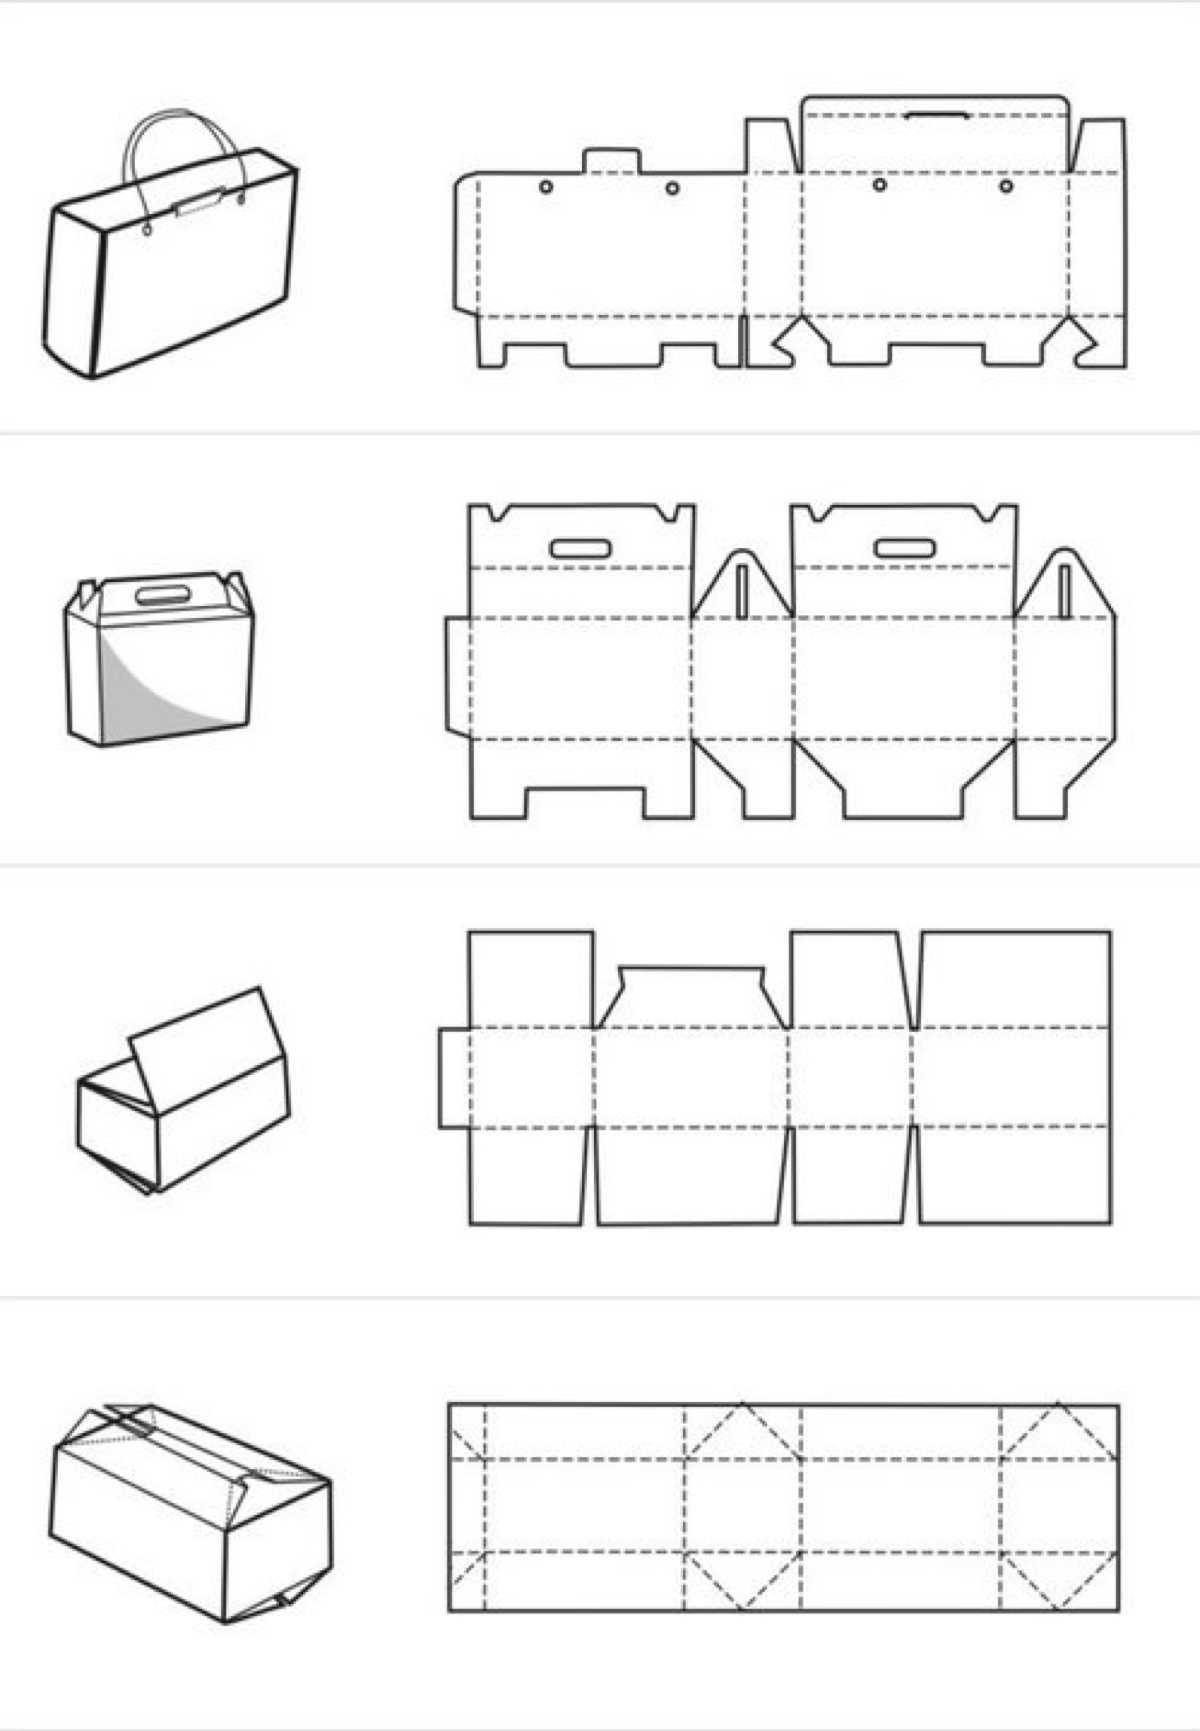 陈列式纸盒结构图片